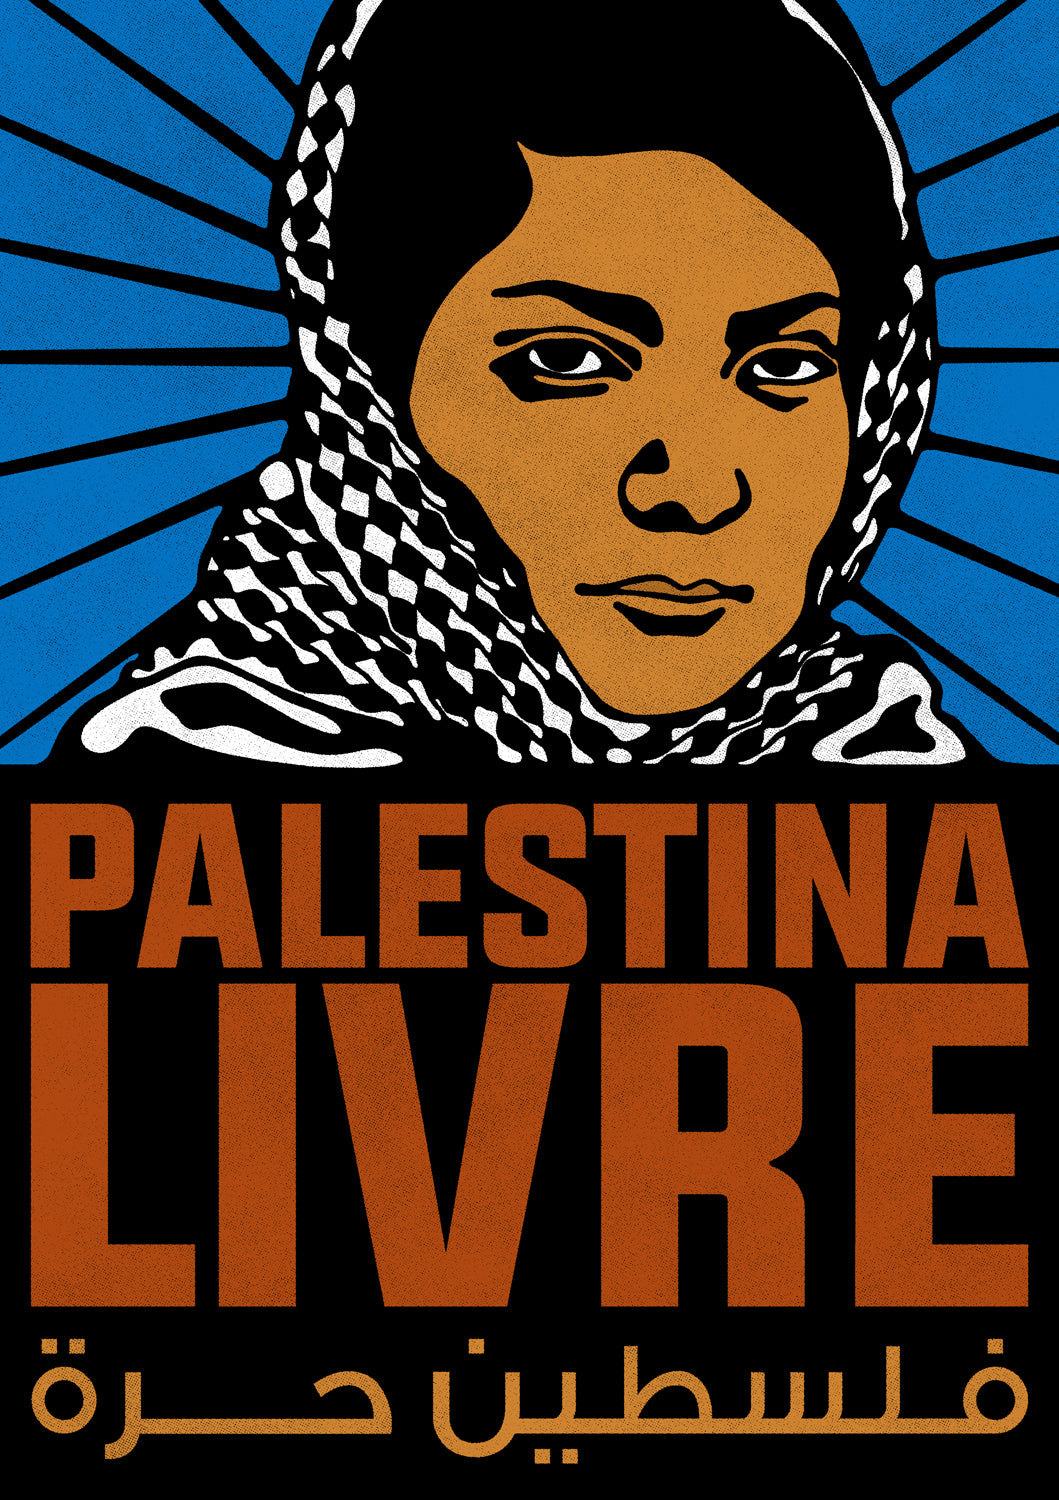 'Palestine Livre' by Bruno Dinelli